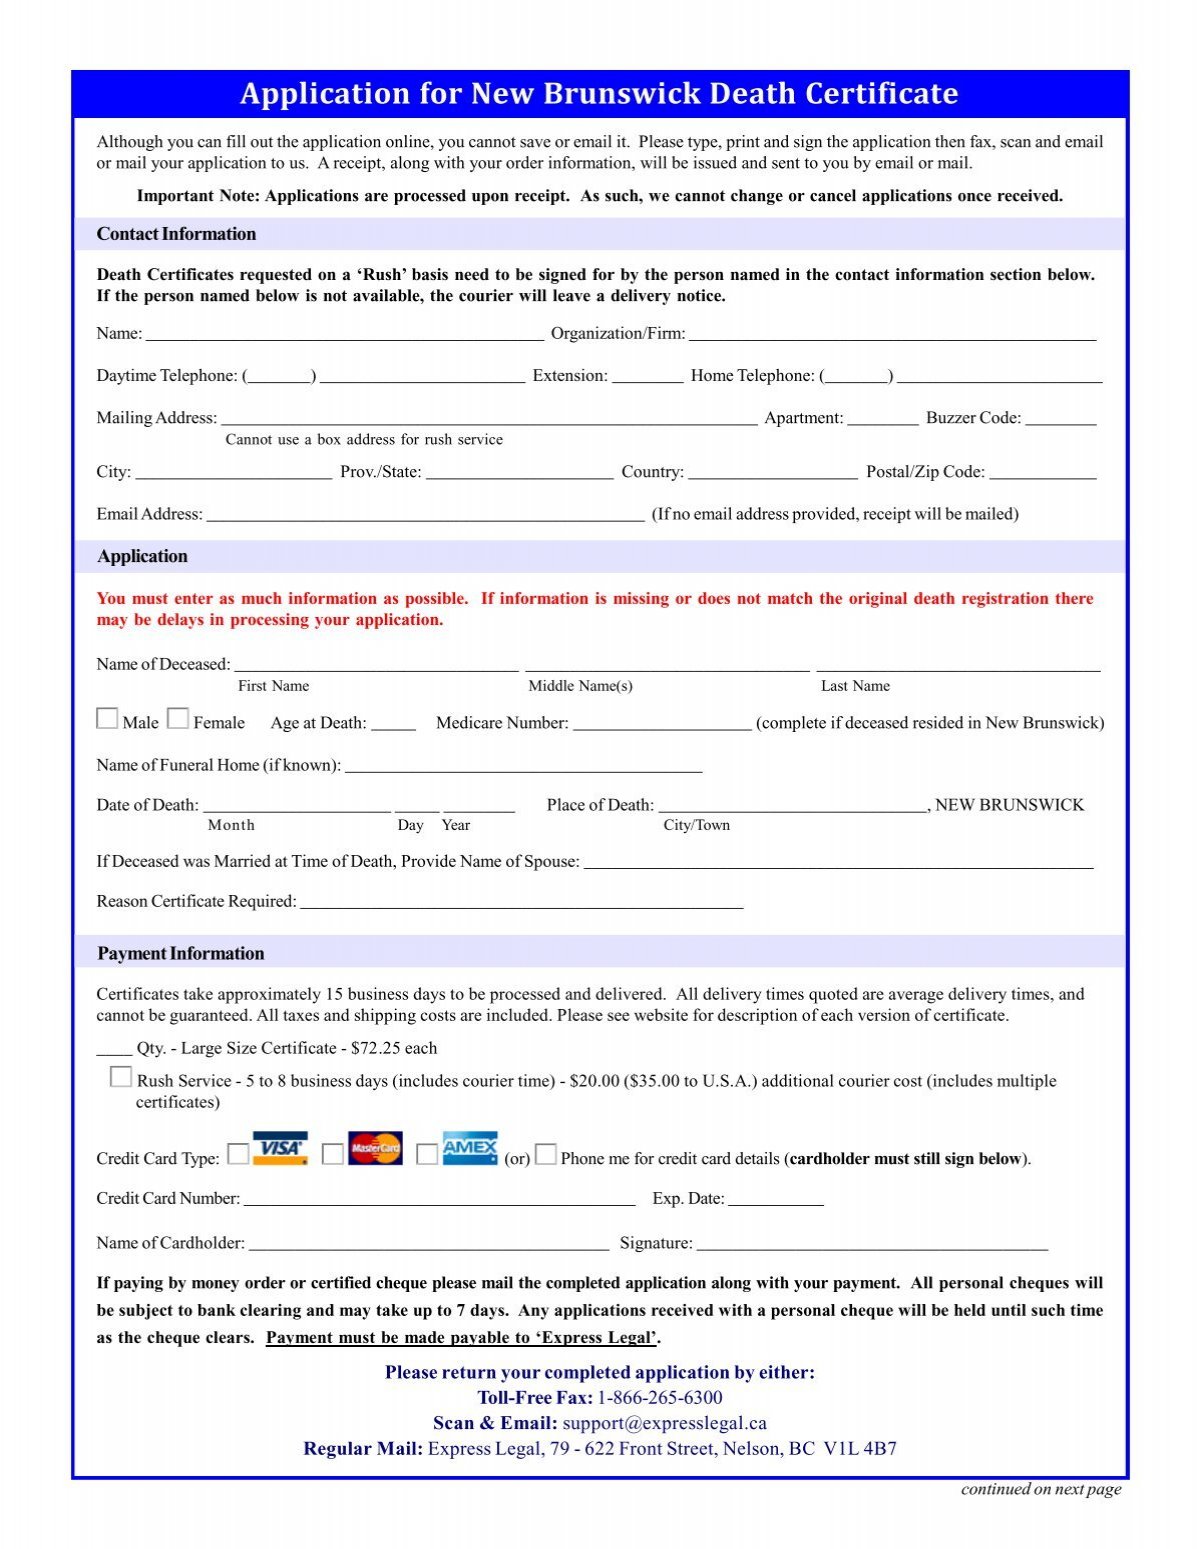 death-certificate-request-form-vitalcertificates-ca